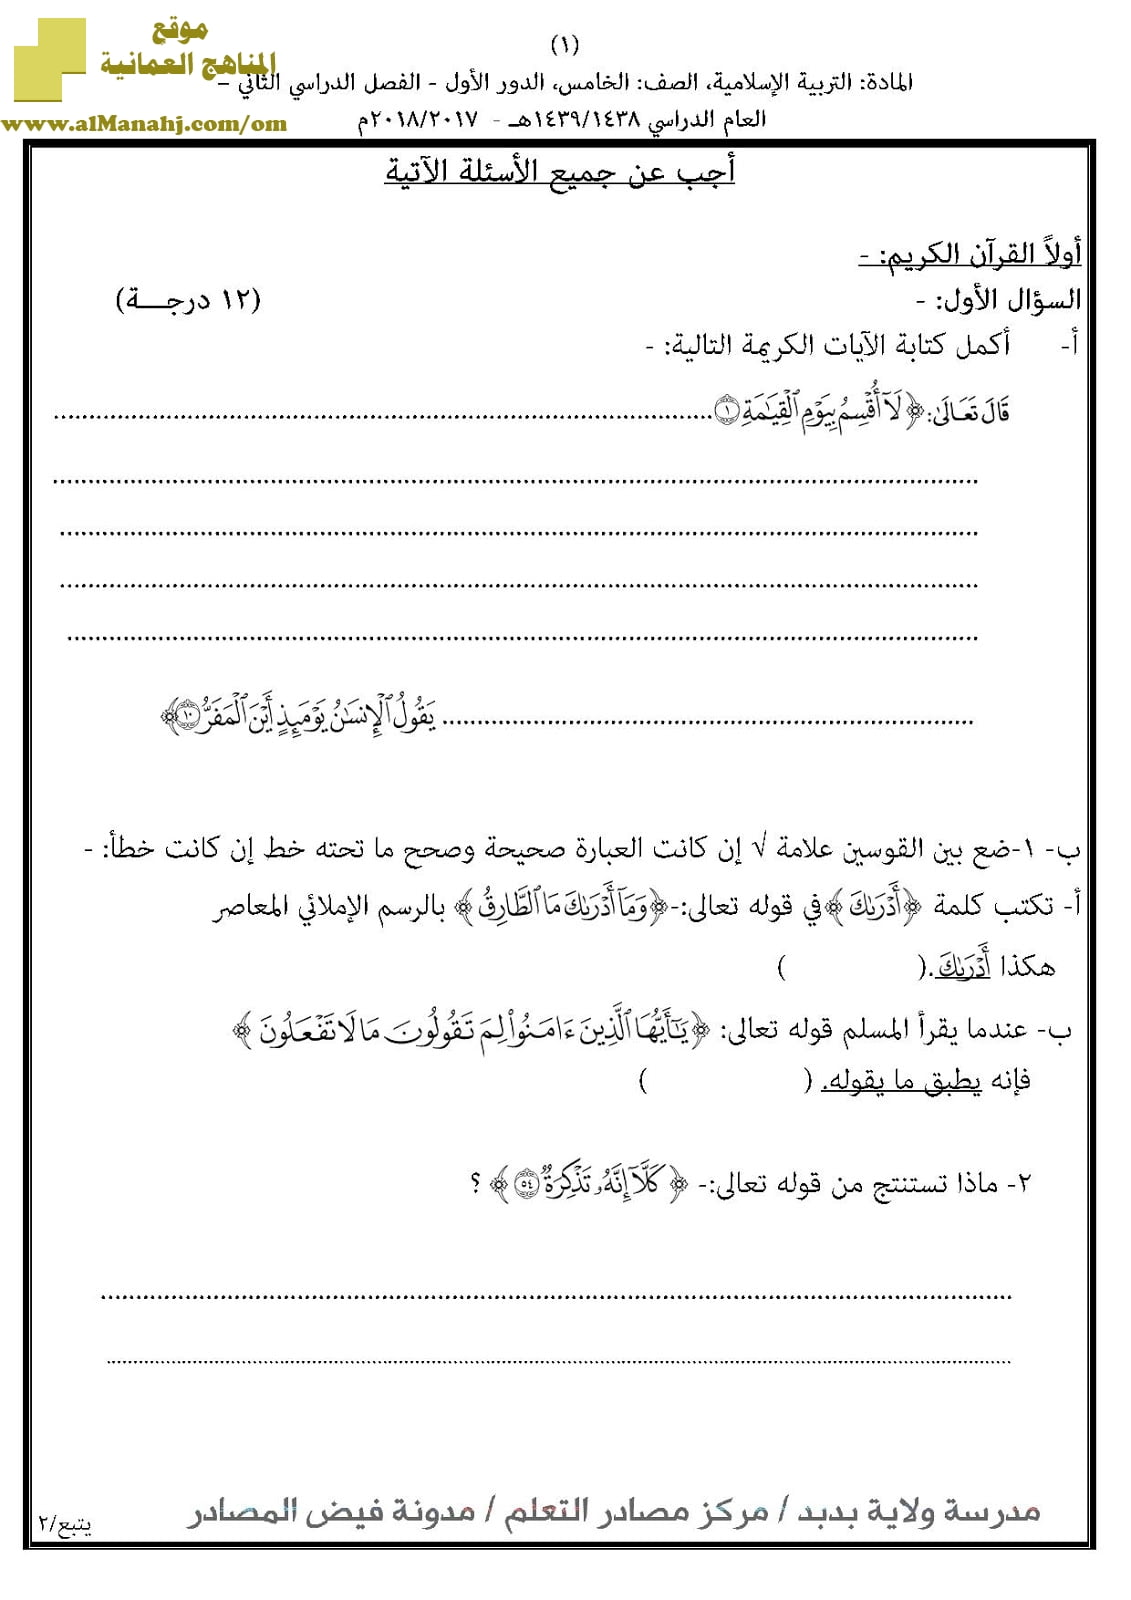 أسئلة الامتحان الرسمية للفصل الدراسي الثاني الدور الأول و (تربية اسلامية) الخامس